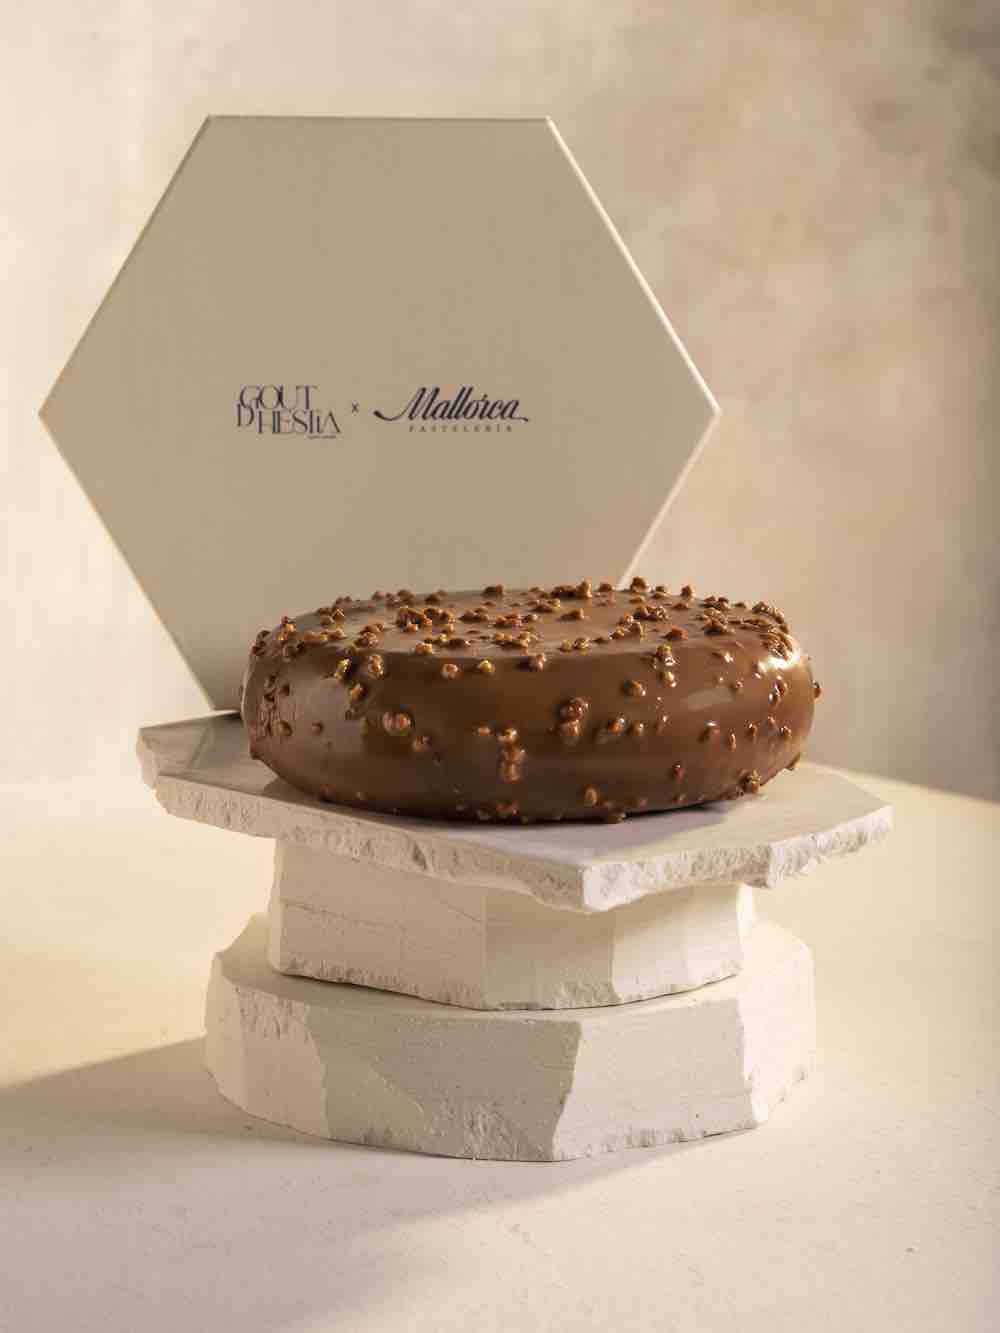 imagen 1 de Goutdhestia, la tarta de chocolate y praliné que quieres probar.